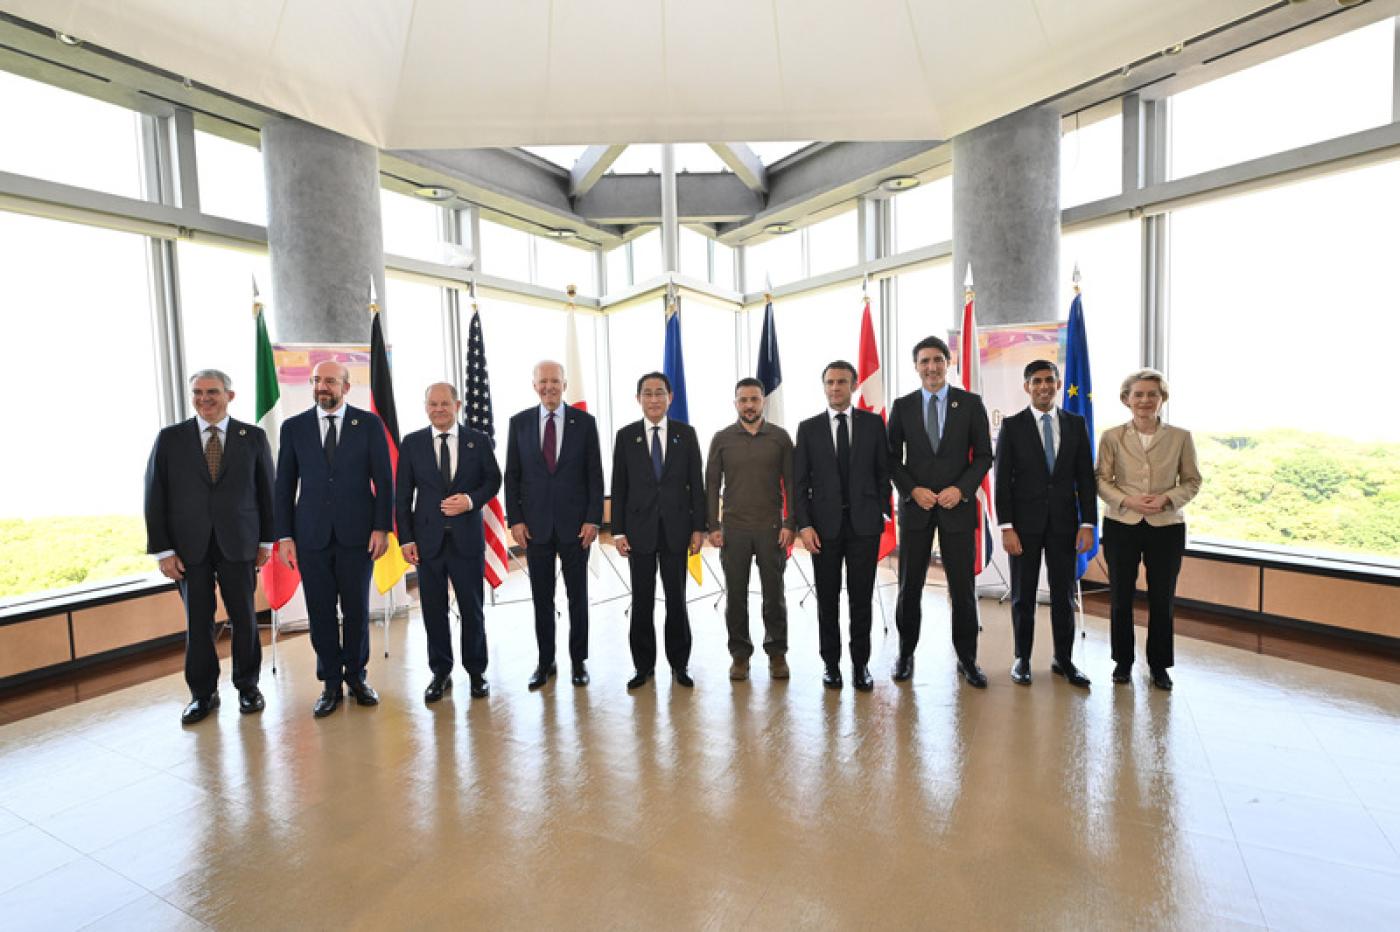 前往日本廣島出席G7峰會的烏克蘭總統澤倫斯基（右 5）與各國領袖合影。 日本外務省提供